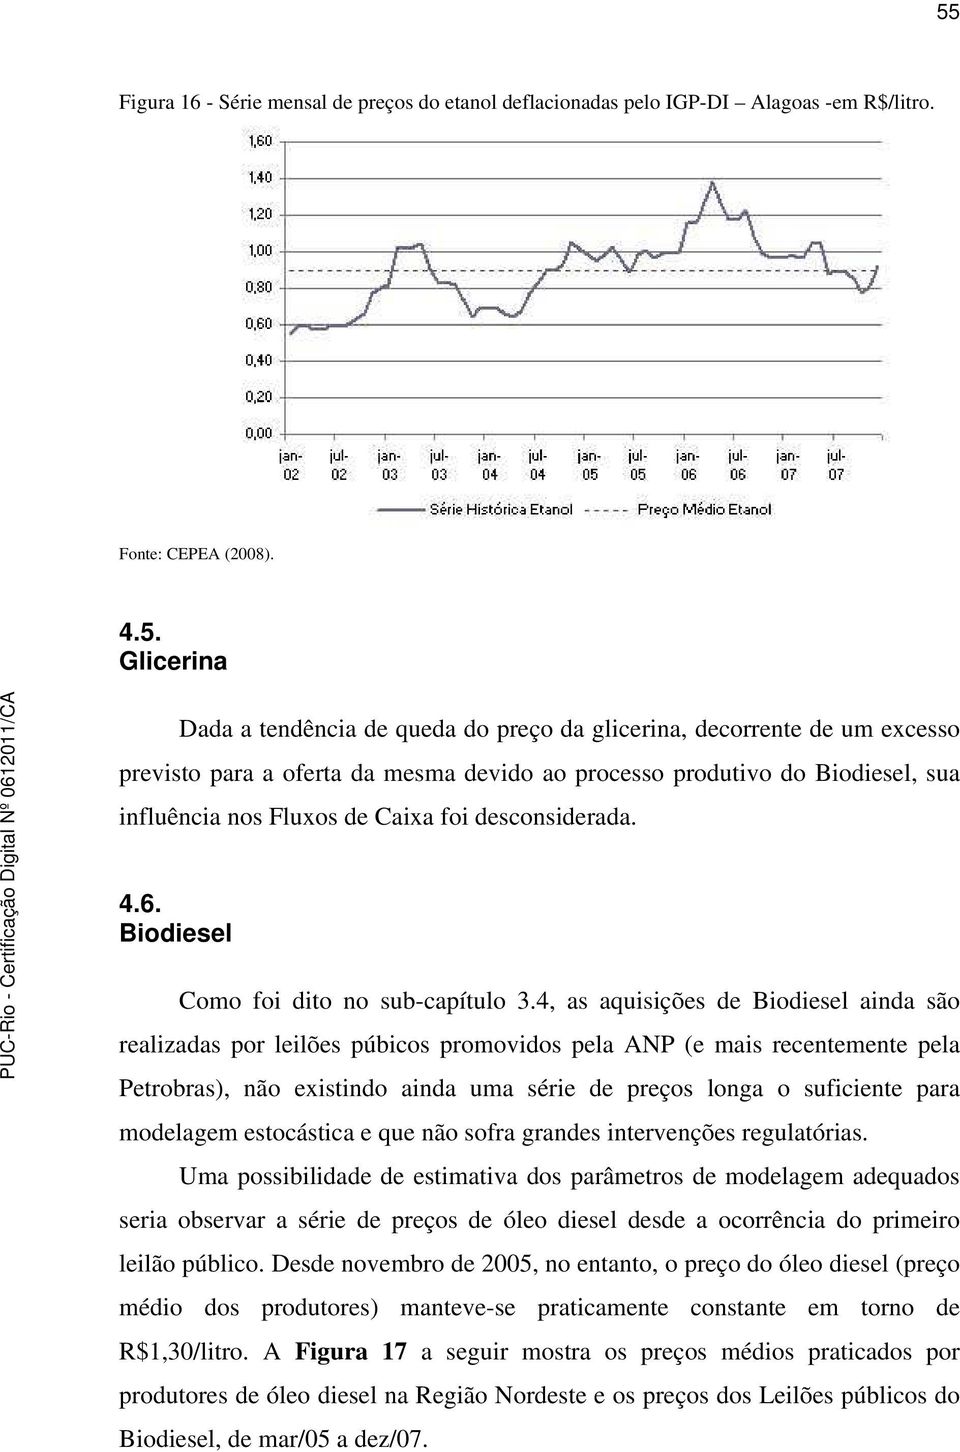 4, as aquisições de Biodiesel ainda são realizadas por leilões púbicos promovidos pela ANP (e mais recentemente pela Petrobras), não existindo ainda uma série de preços longa o suficiente para